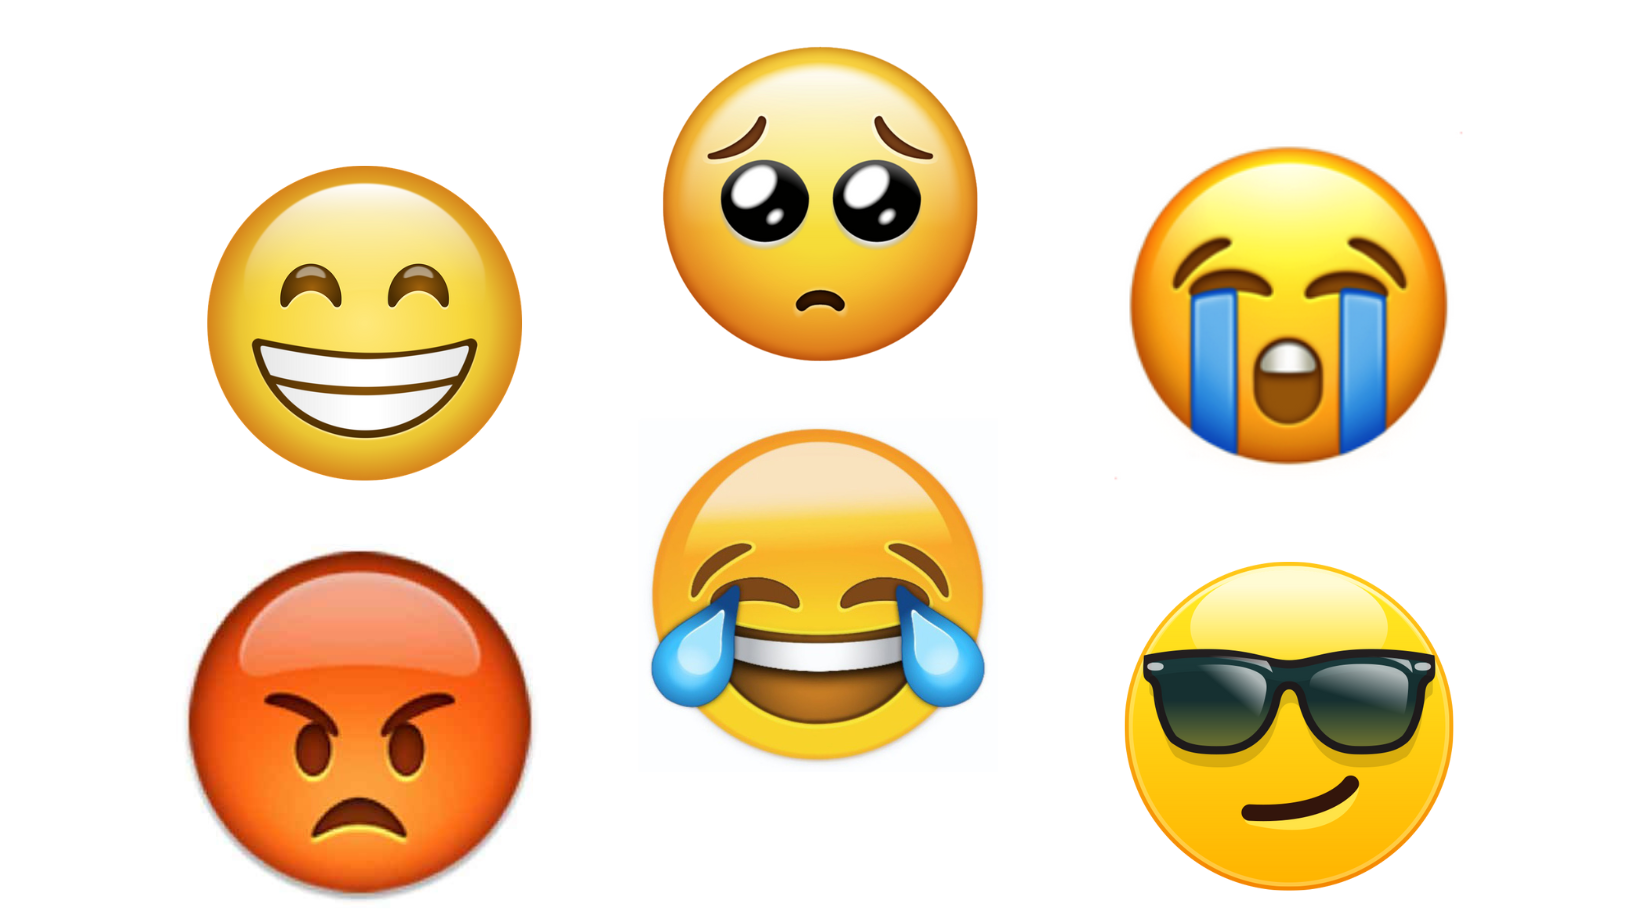 Emotions expressed using emojis